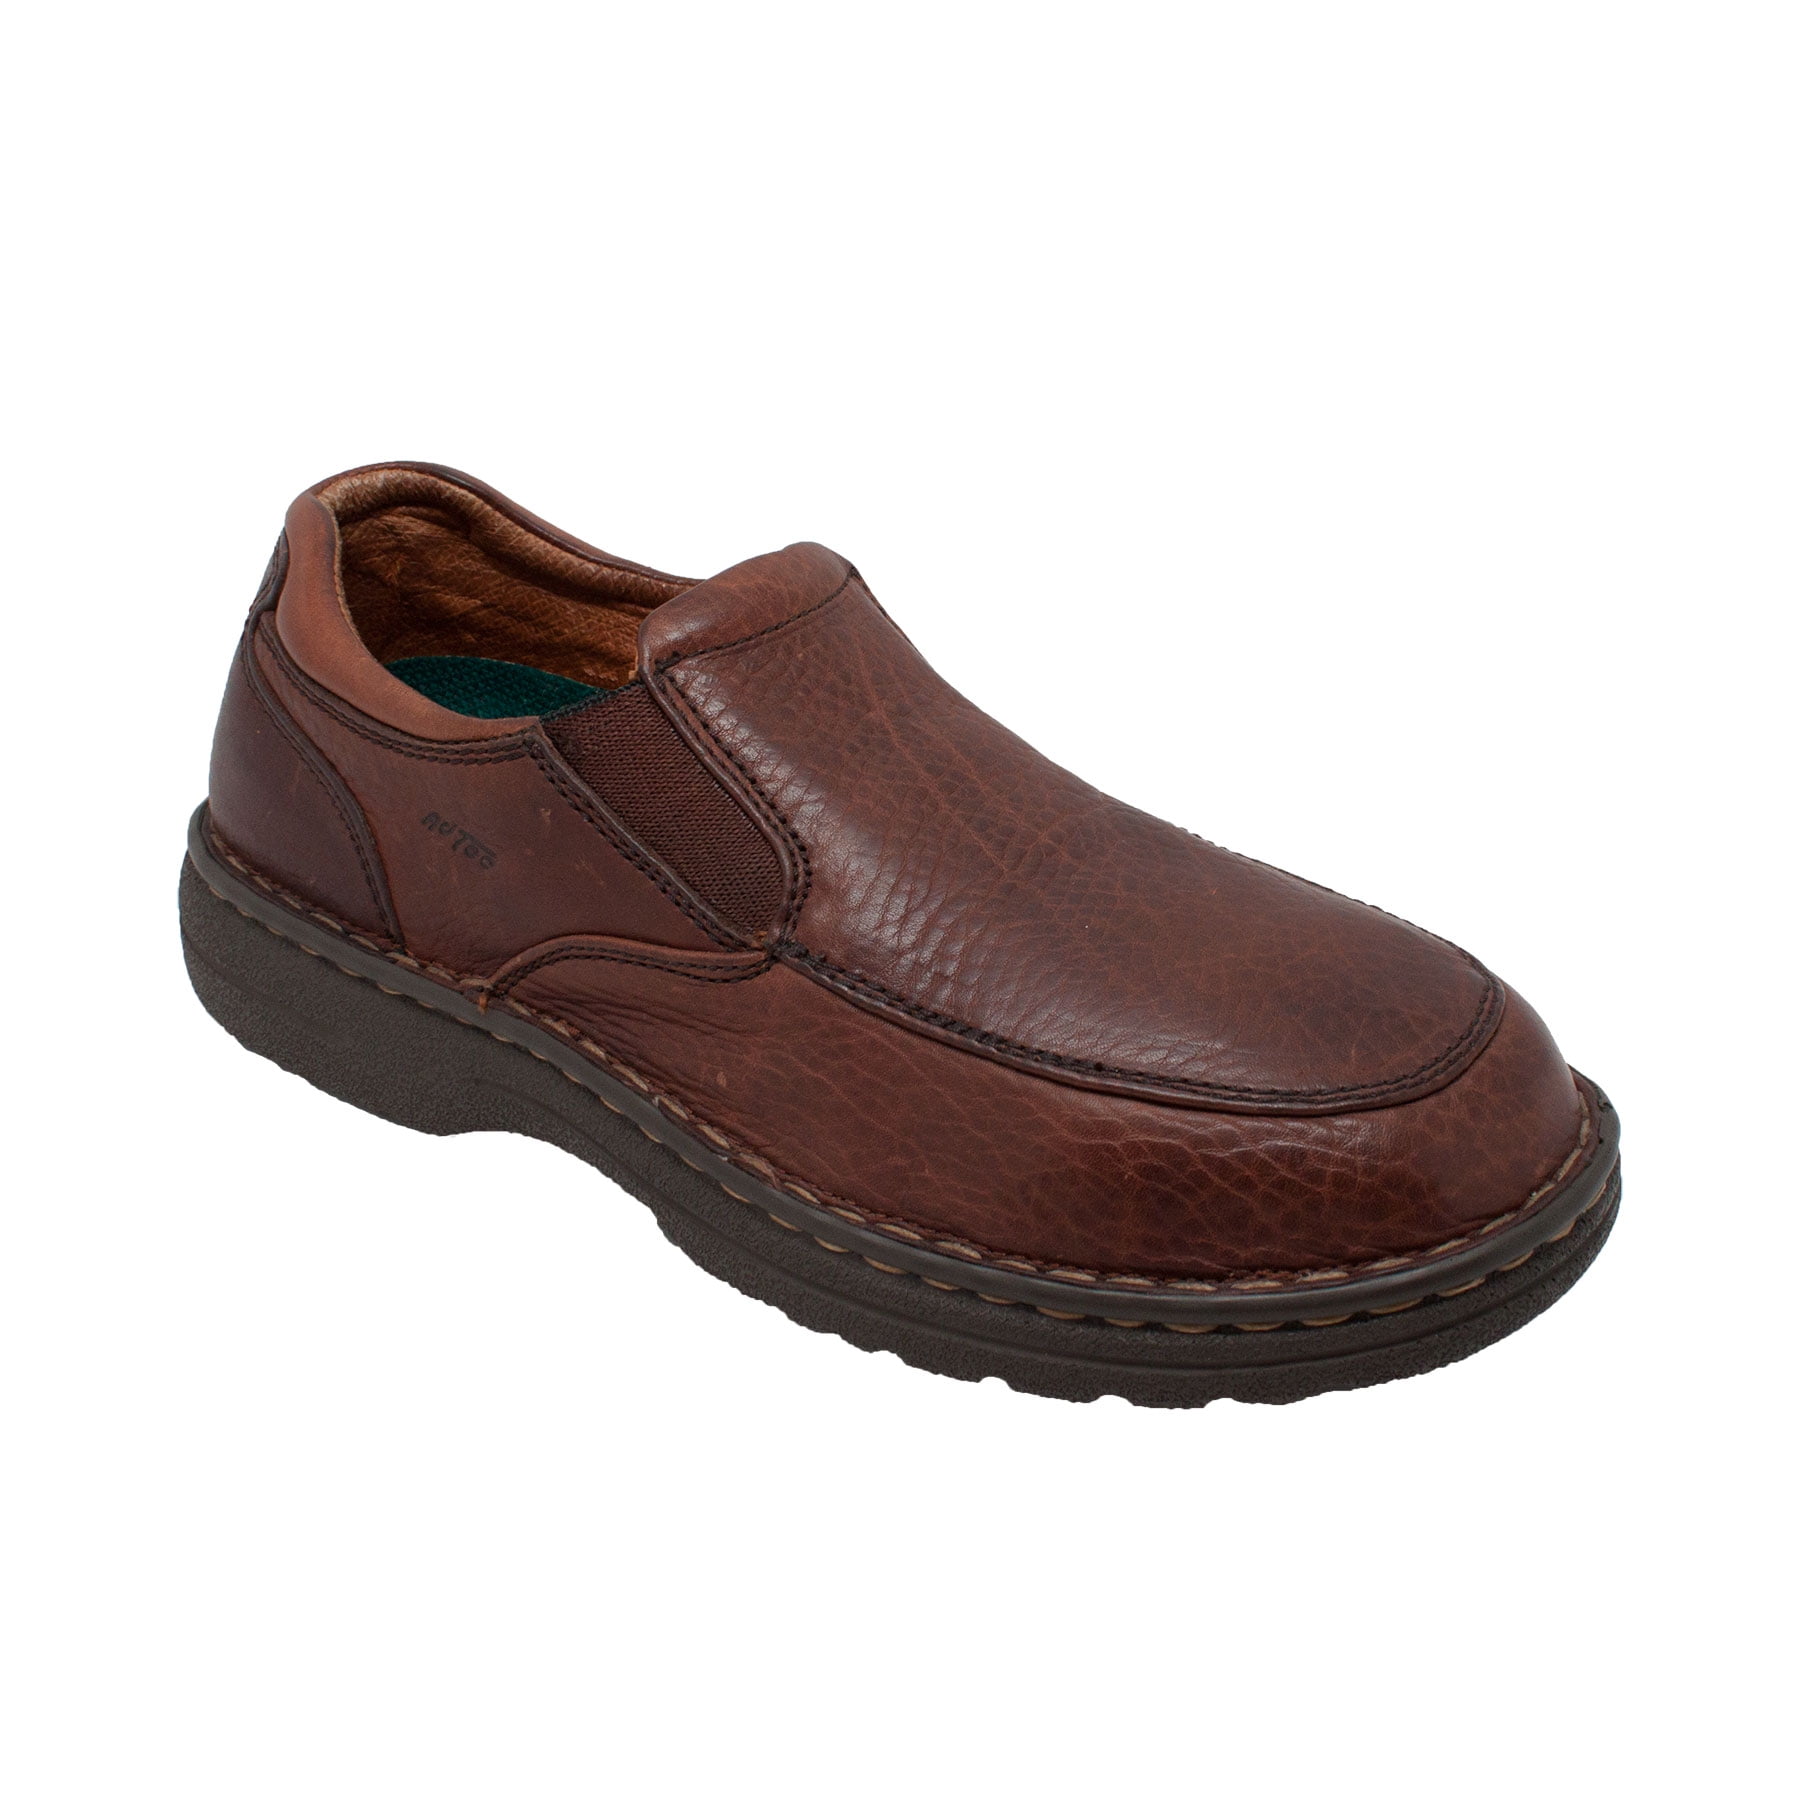 AdTec - AdTec Men's Comfort Slip Moc. Casual Full Grain Brown Leather ...